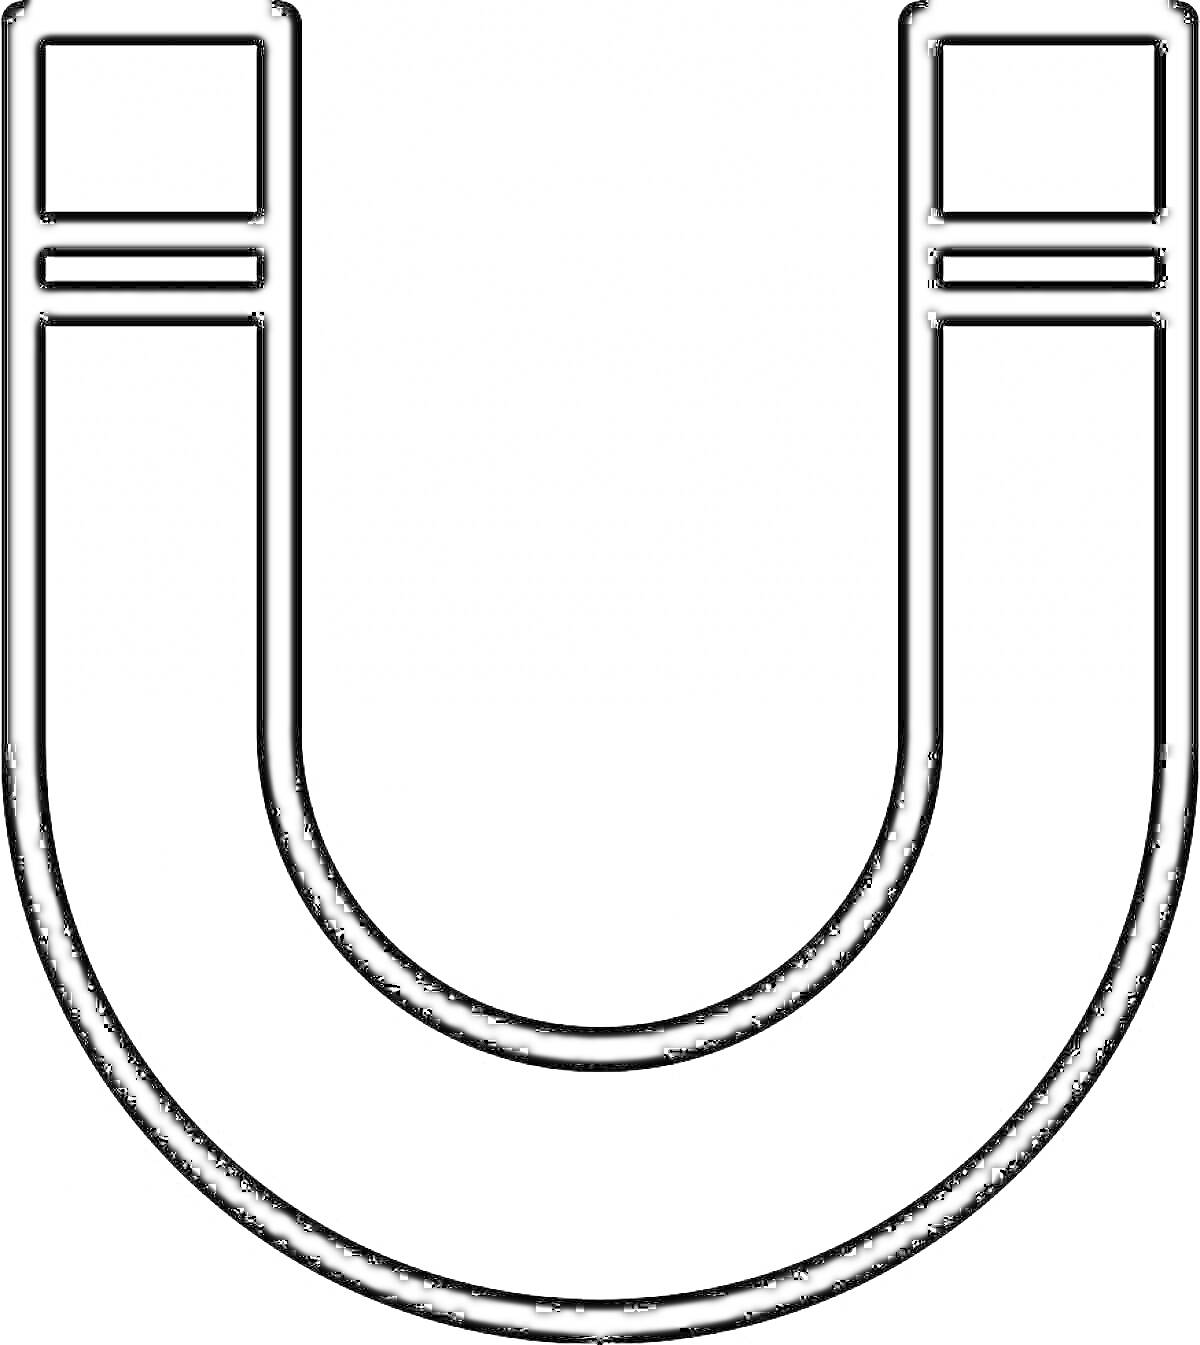 U-образный магнит с линиями на концах